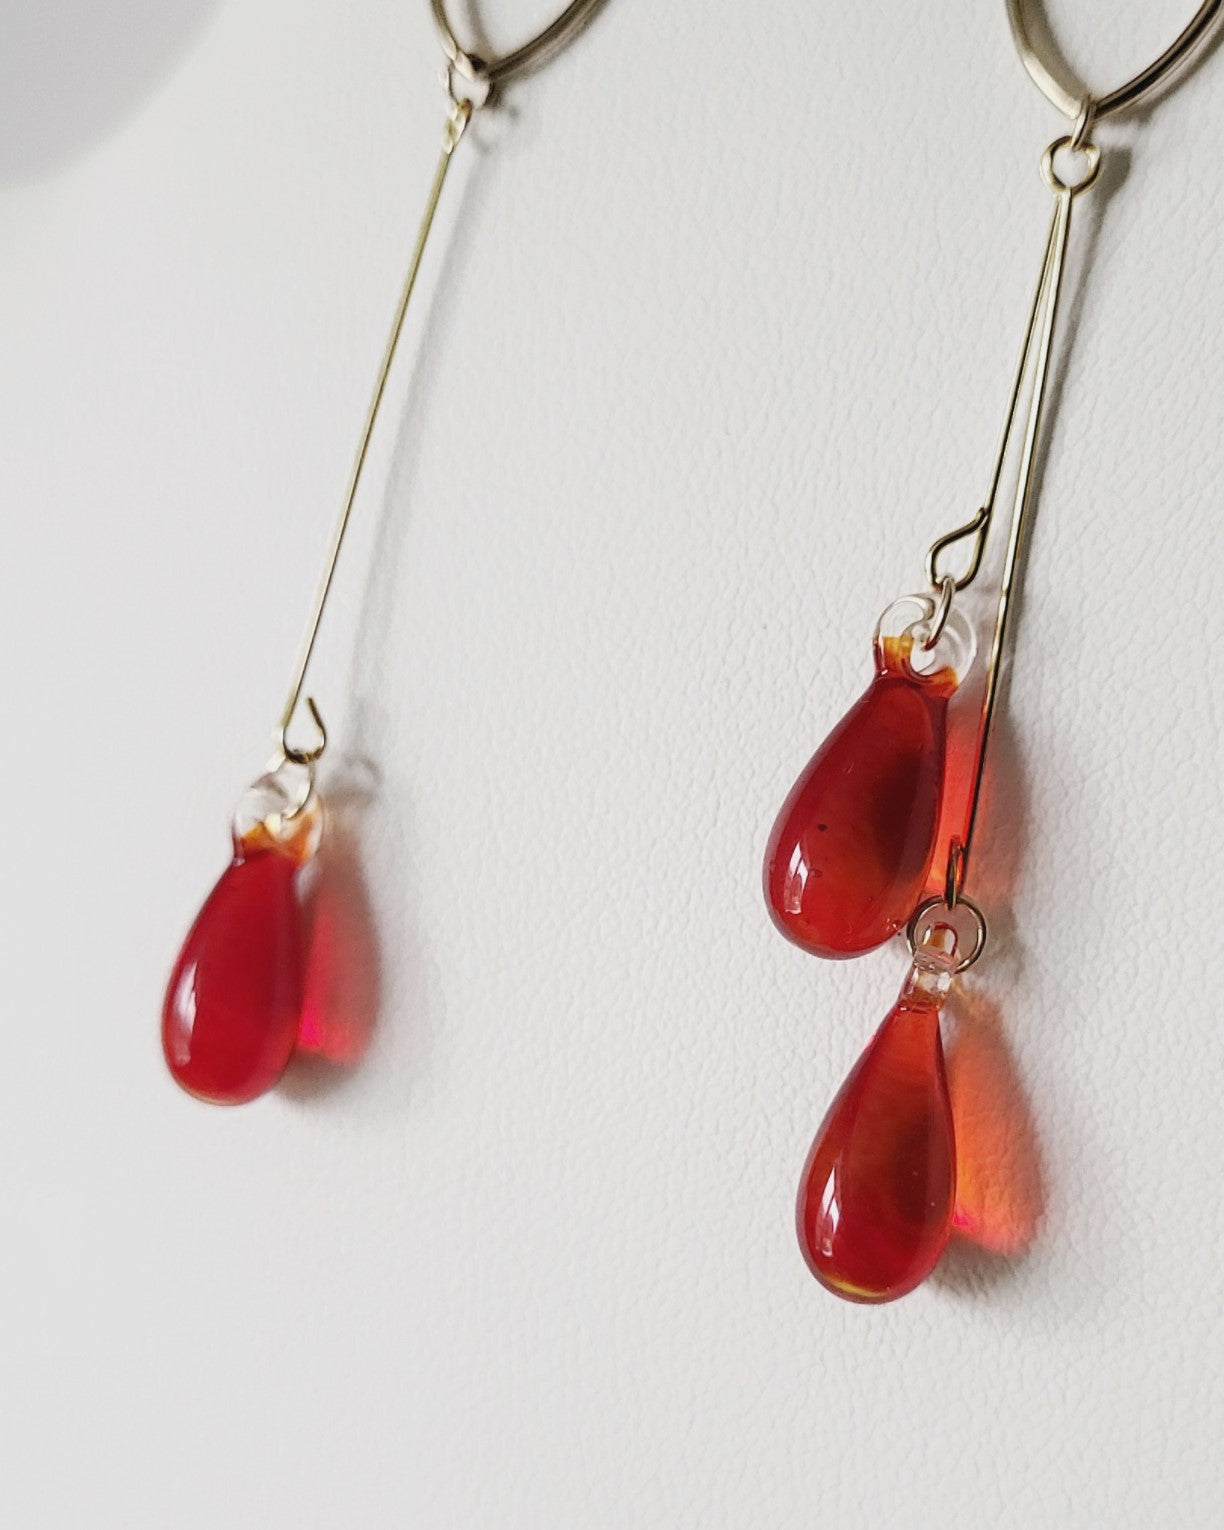 Crimson Droplet glass earrings